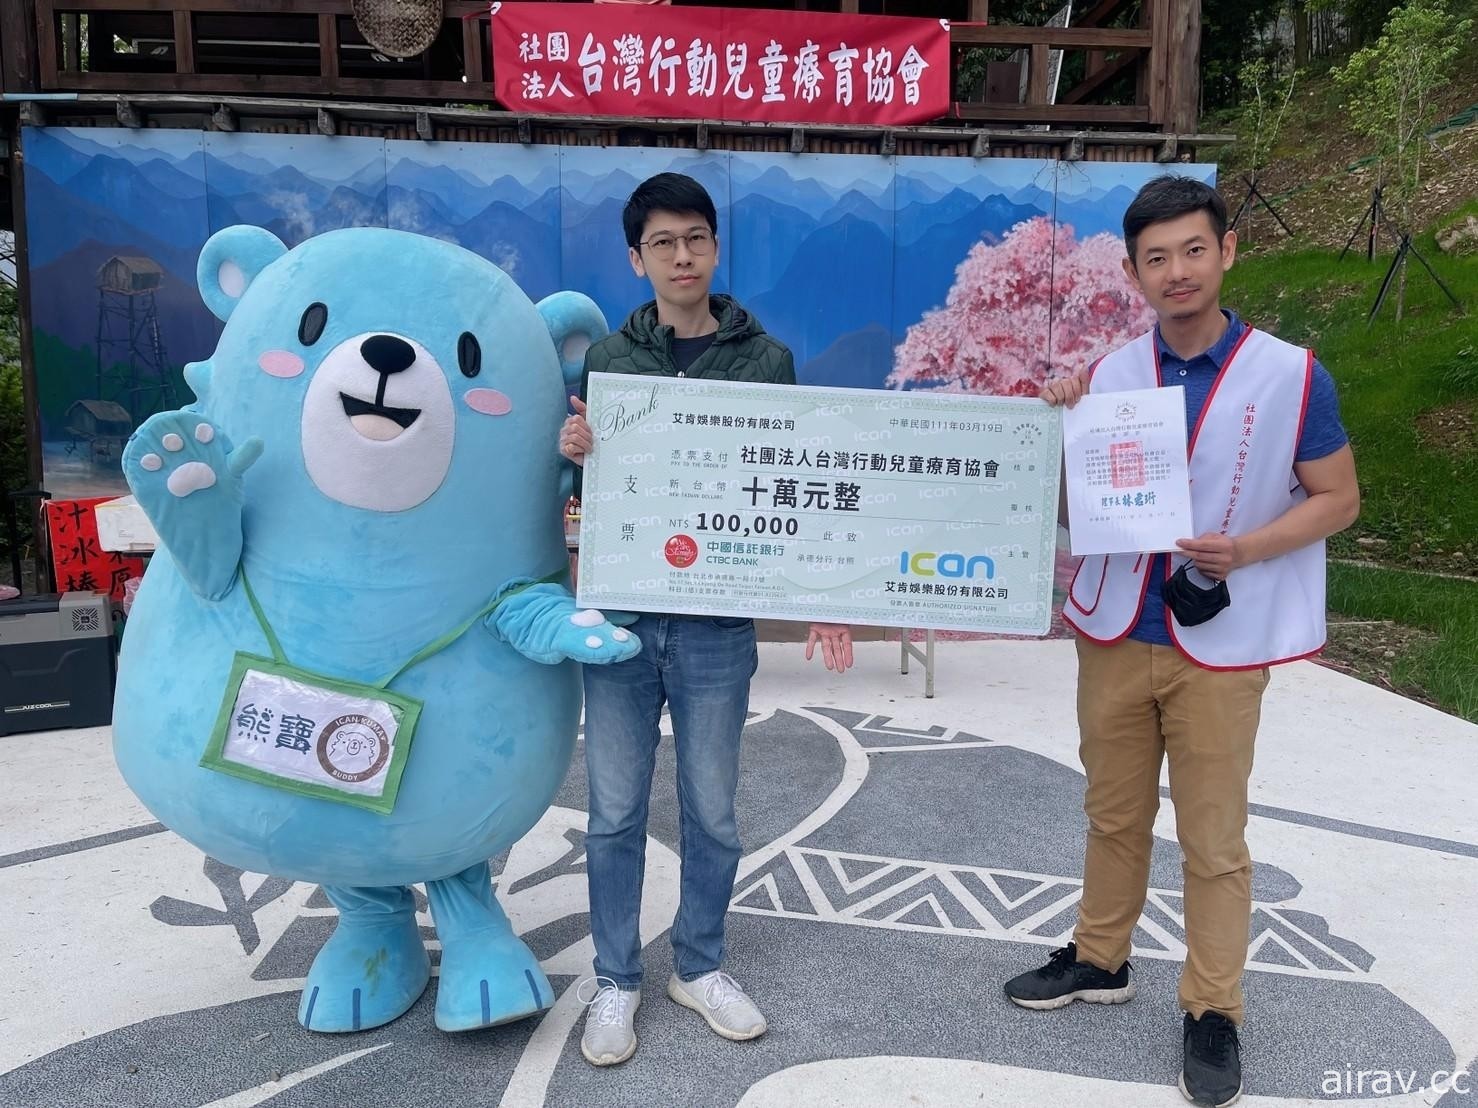 艾肯娛樂攜手台北逸澤扶輪社 捐款幫助台灣行動兒童療育協會